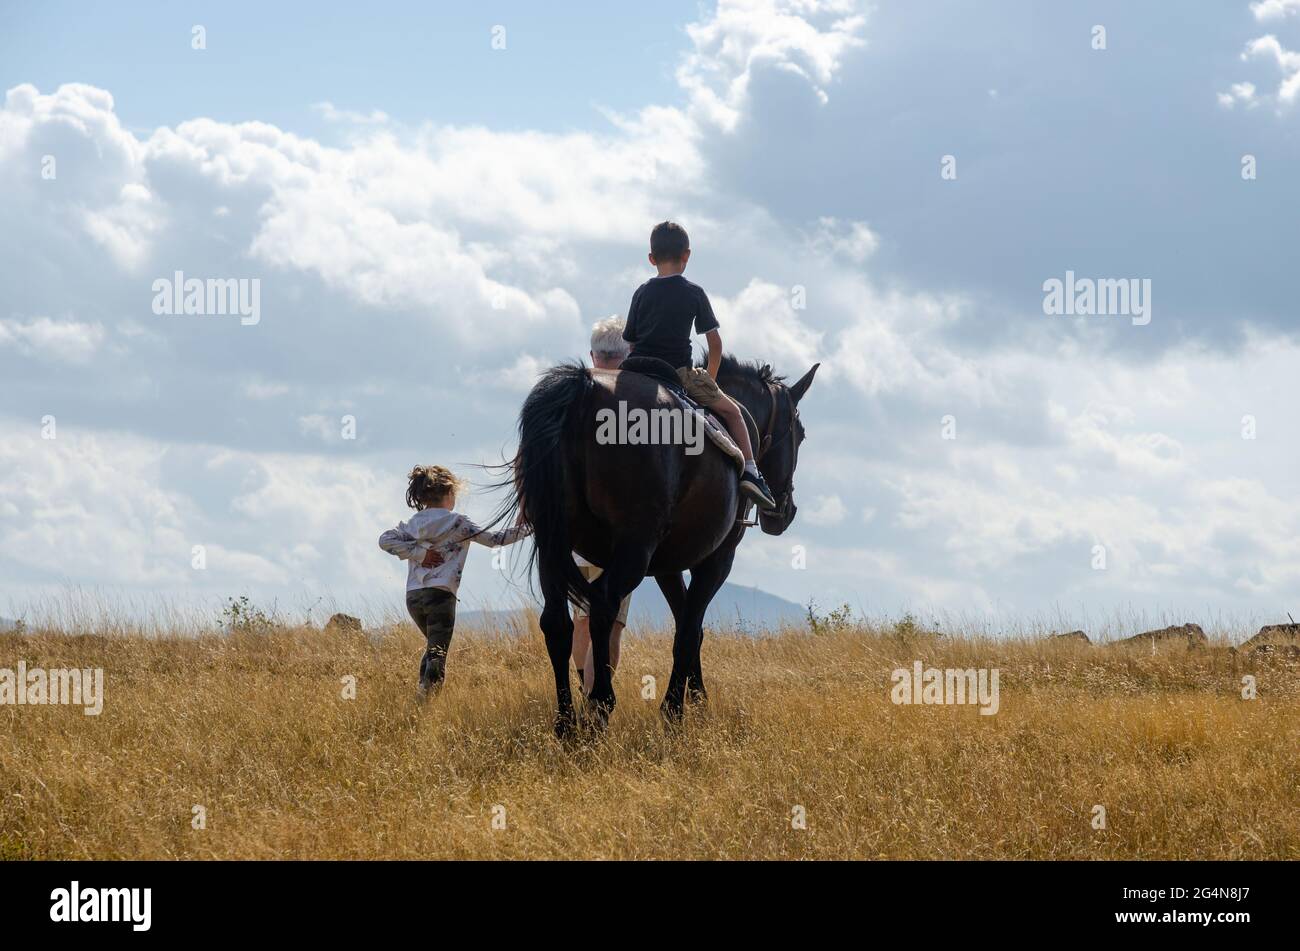 а petite fille dirige un cheval qui est monté par un petit garçon dans un champ de montagne. Photo à l'arrière. Banque D'Images